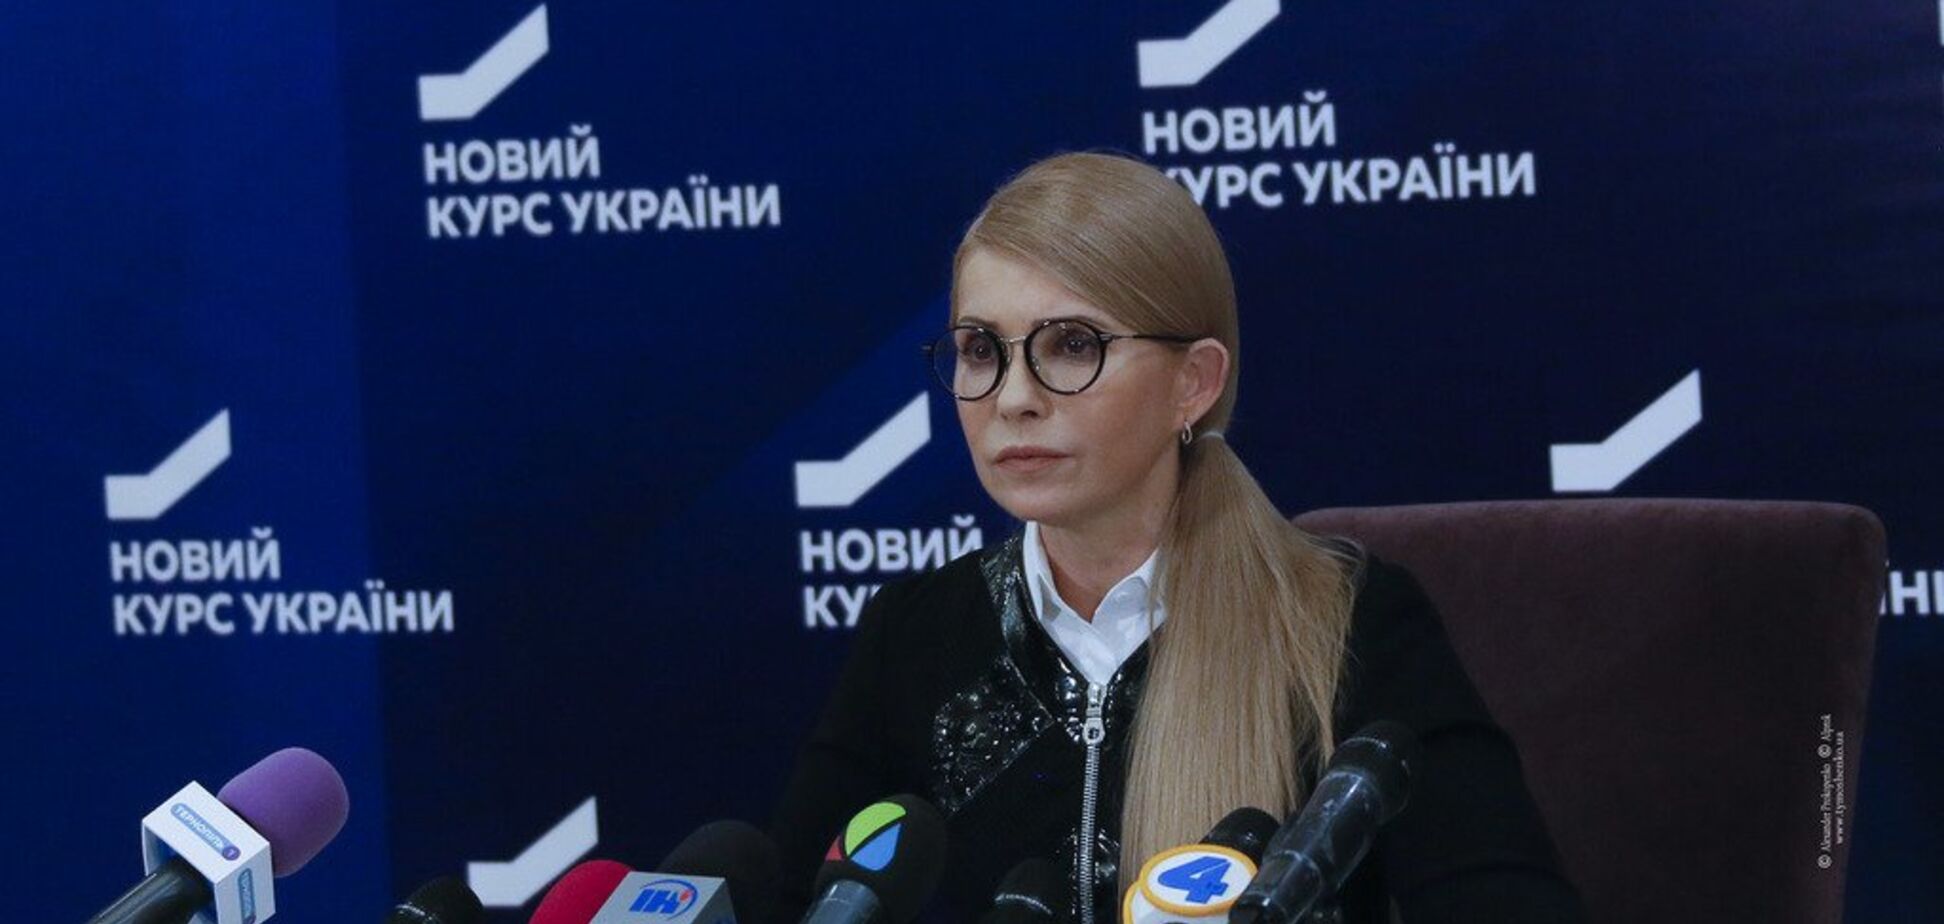 Тимошенко: відсутність тепла в населених пунктах України — свідчення непрофесійності влади